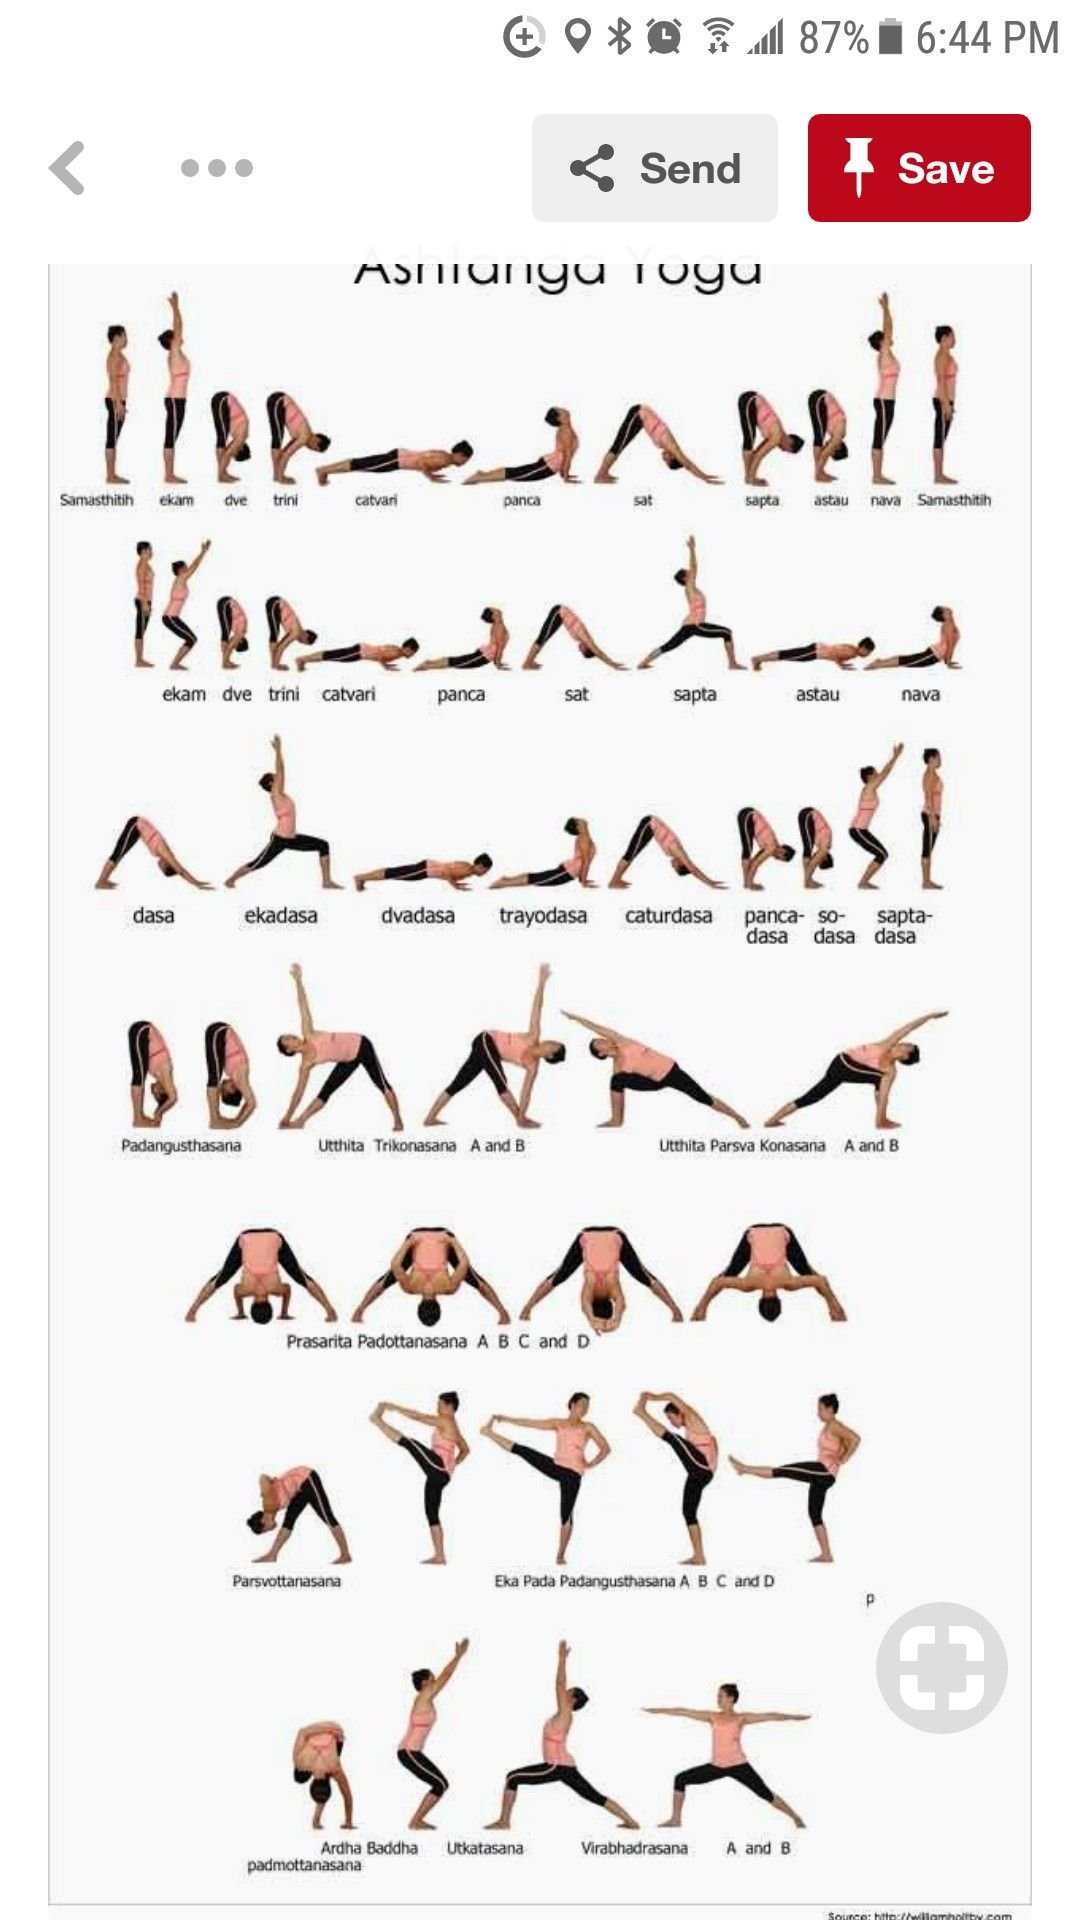 Упражнения для йоги в домашних условиях для начинающих фото пошагово в